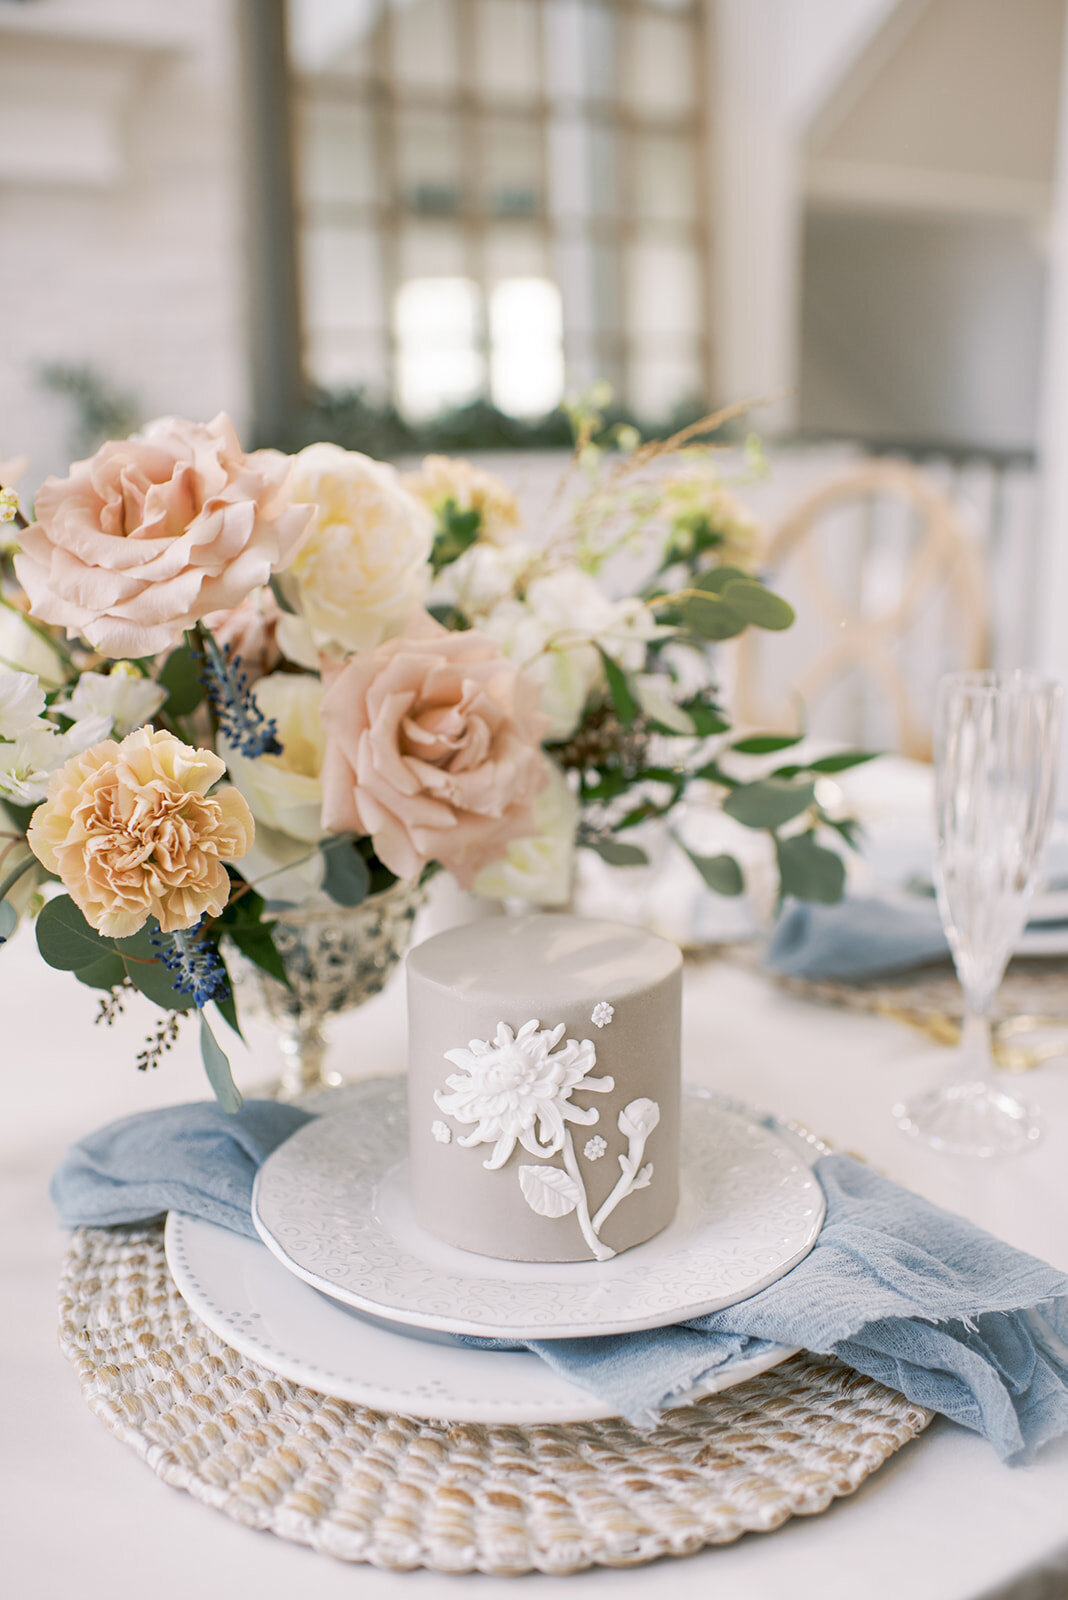 Edmonton-Wedding-Planner-Florals-Wedding-Cake